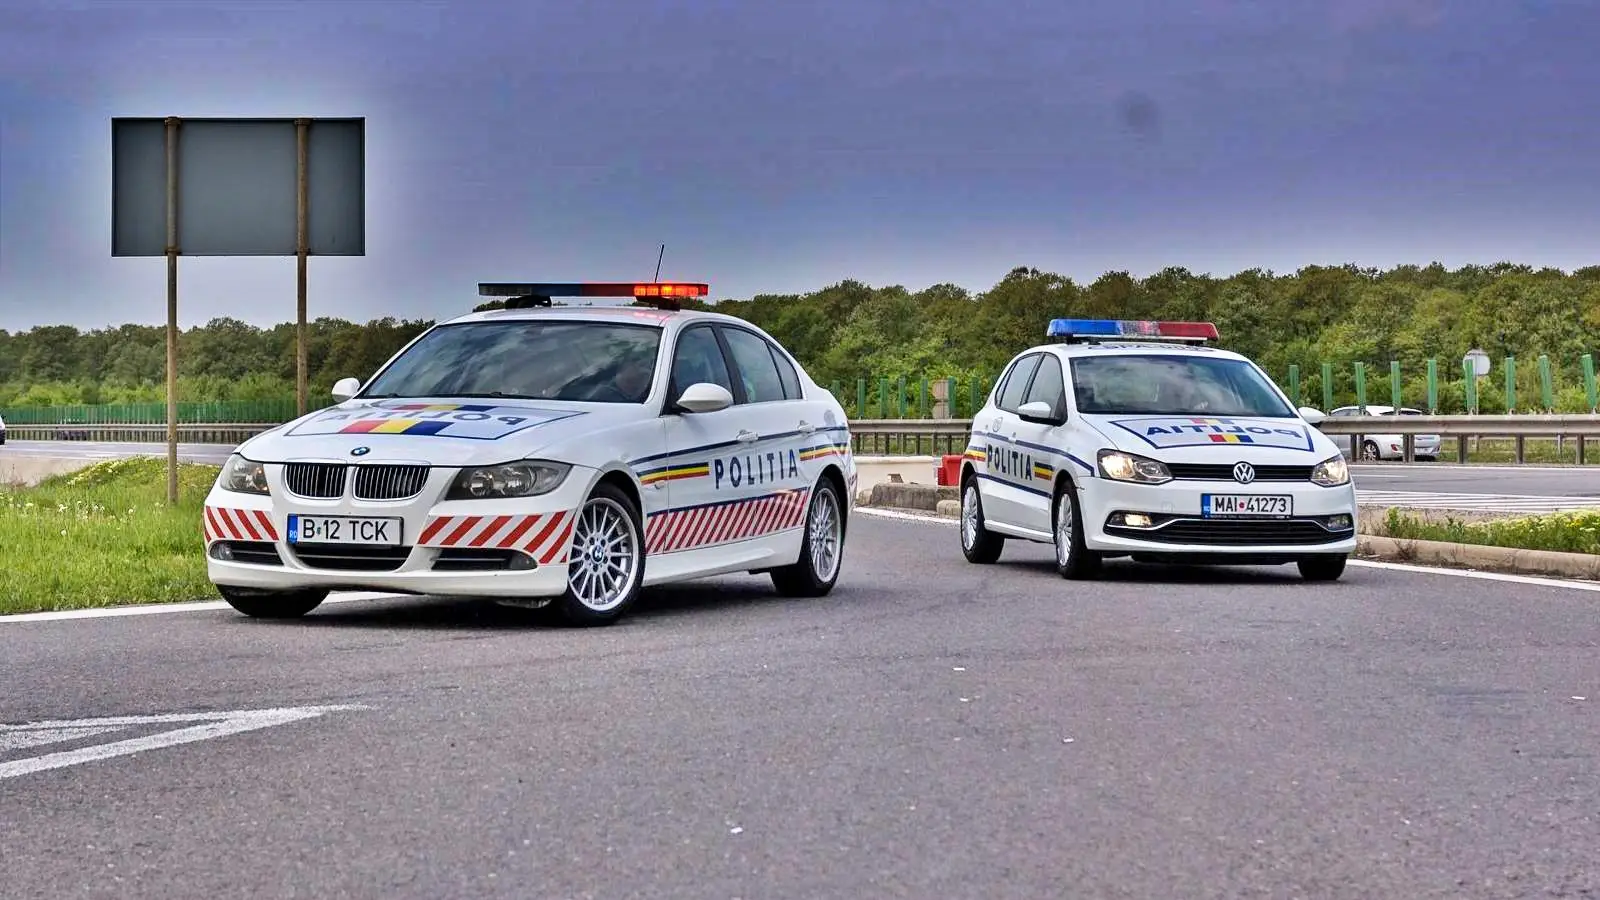 El mensaje de la policía rumana sobre el consumo de drogas al volante